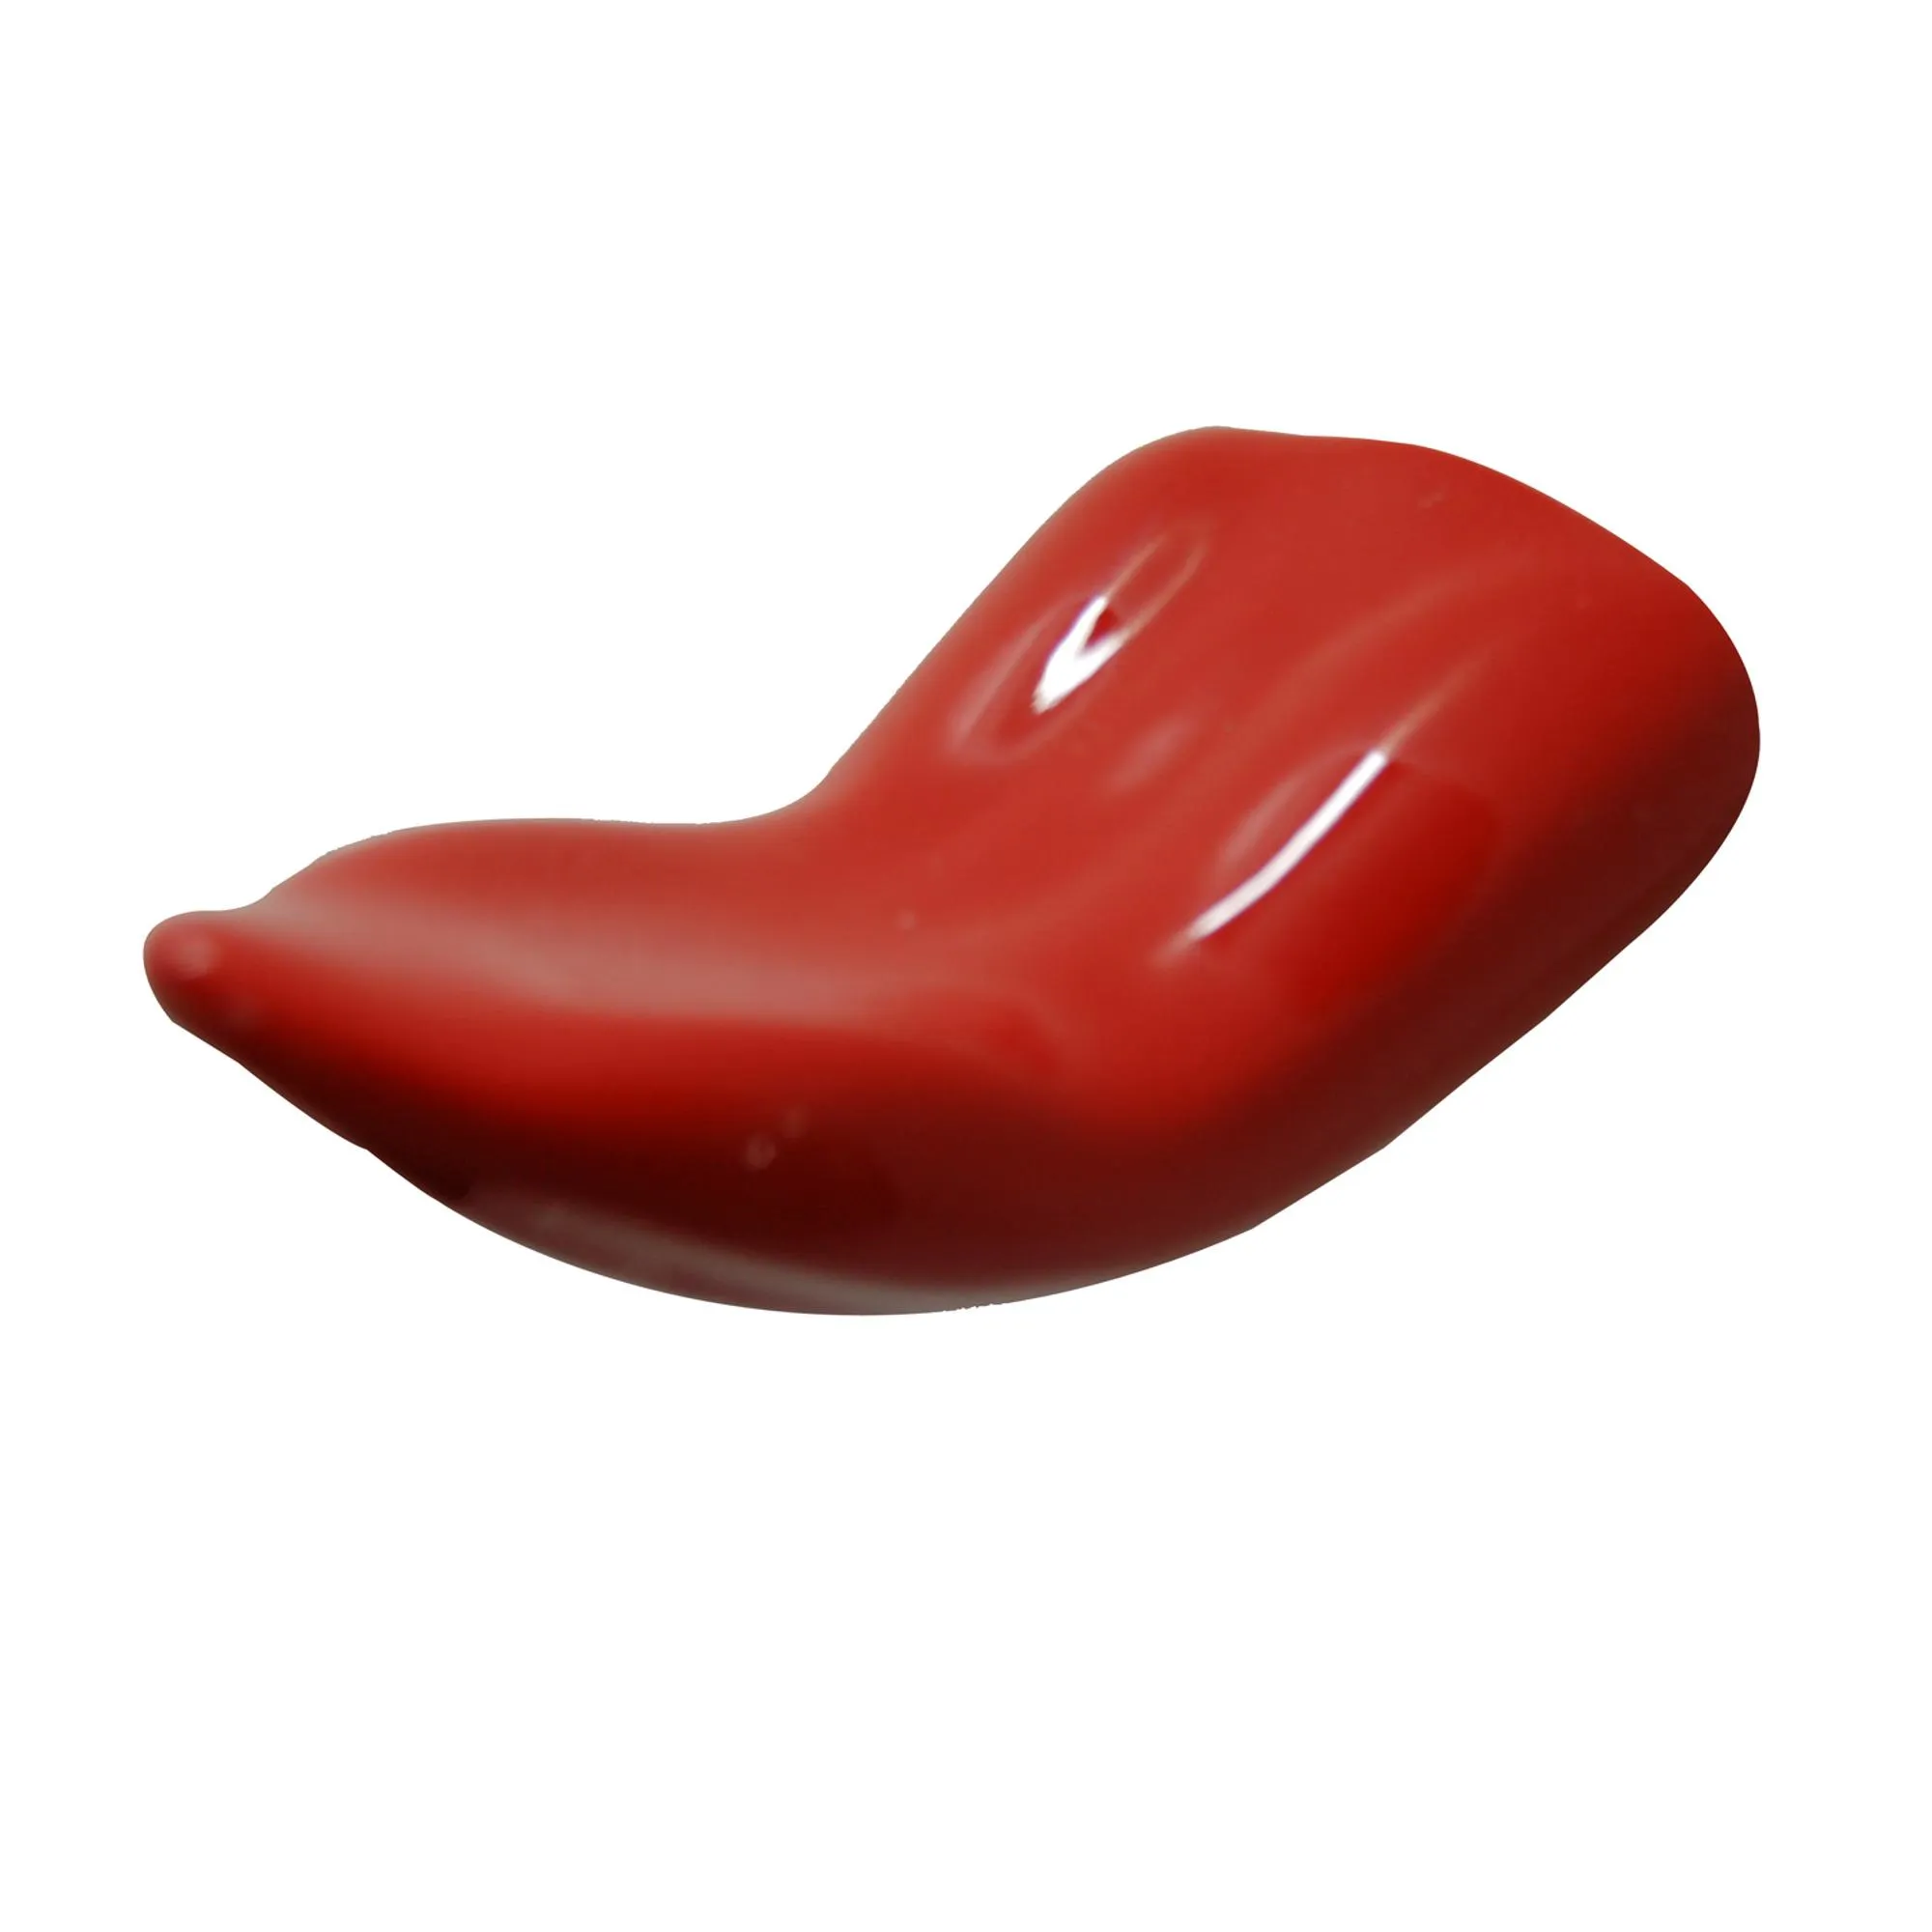 Attaccapanni appendiabiti design leccami 7x11xh5 cm in resina decorata a mano colore rosso lucido carico max 3 kg